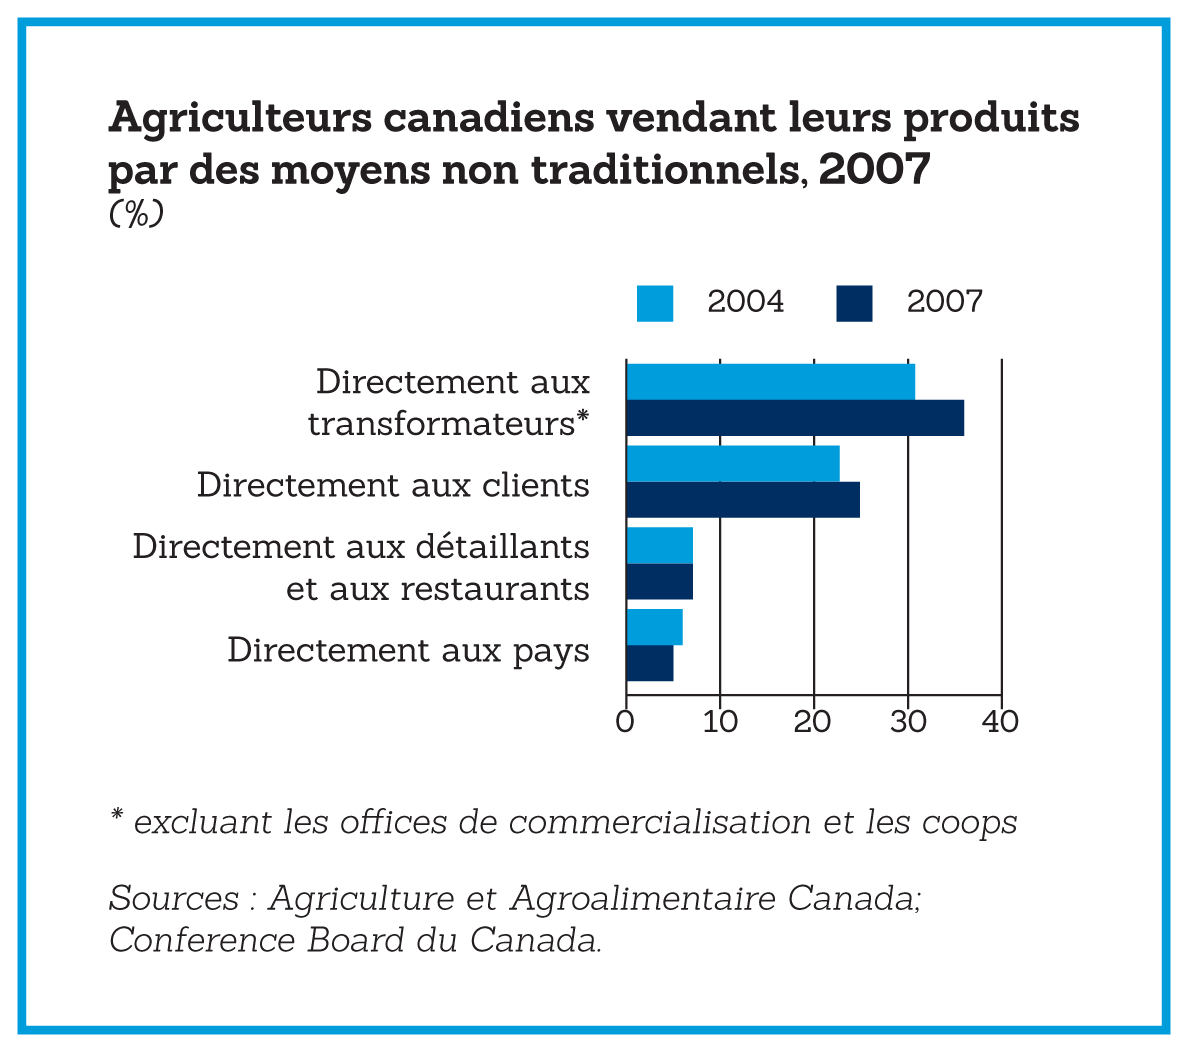 Agriculteurs canadiens vendant leurs produits par des moyens non traditionnels